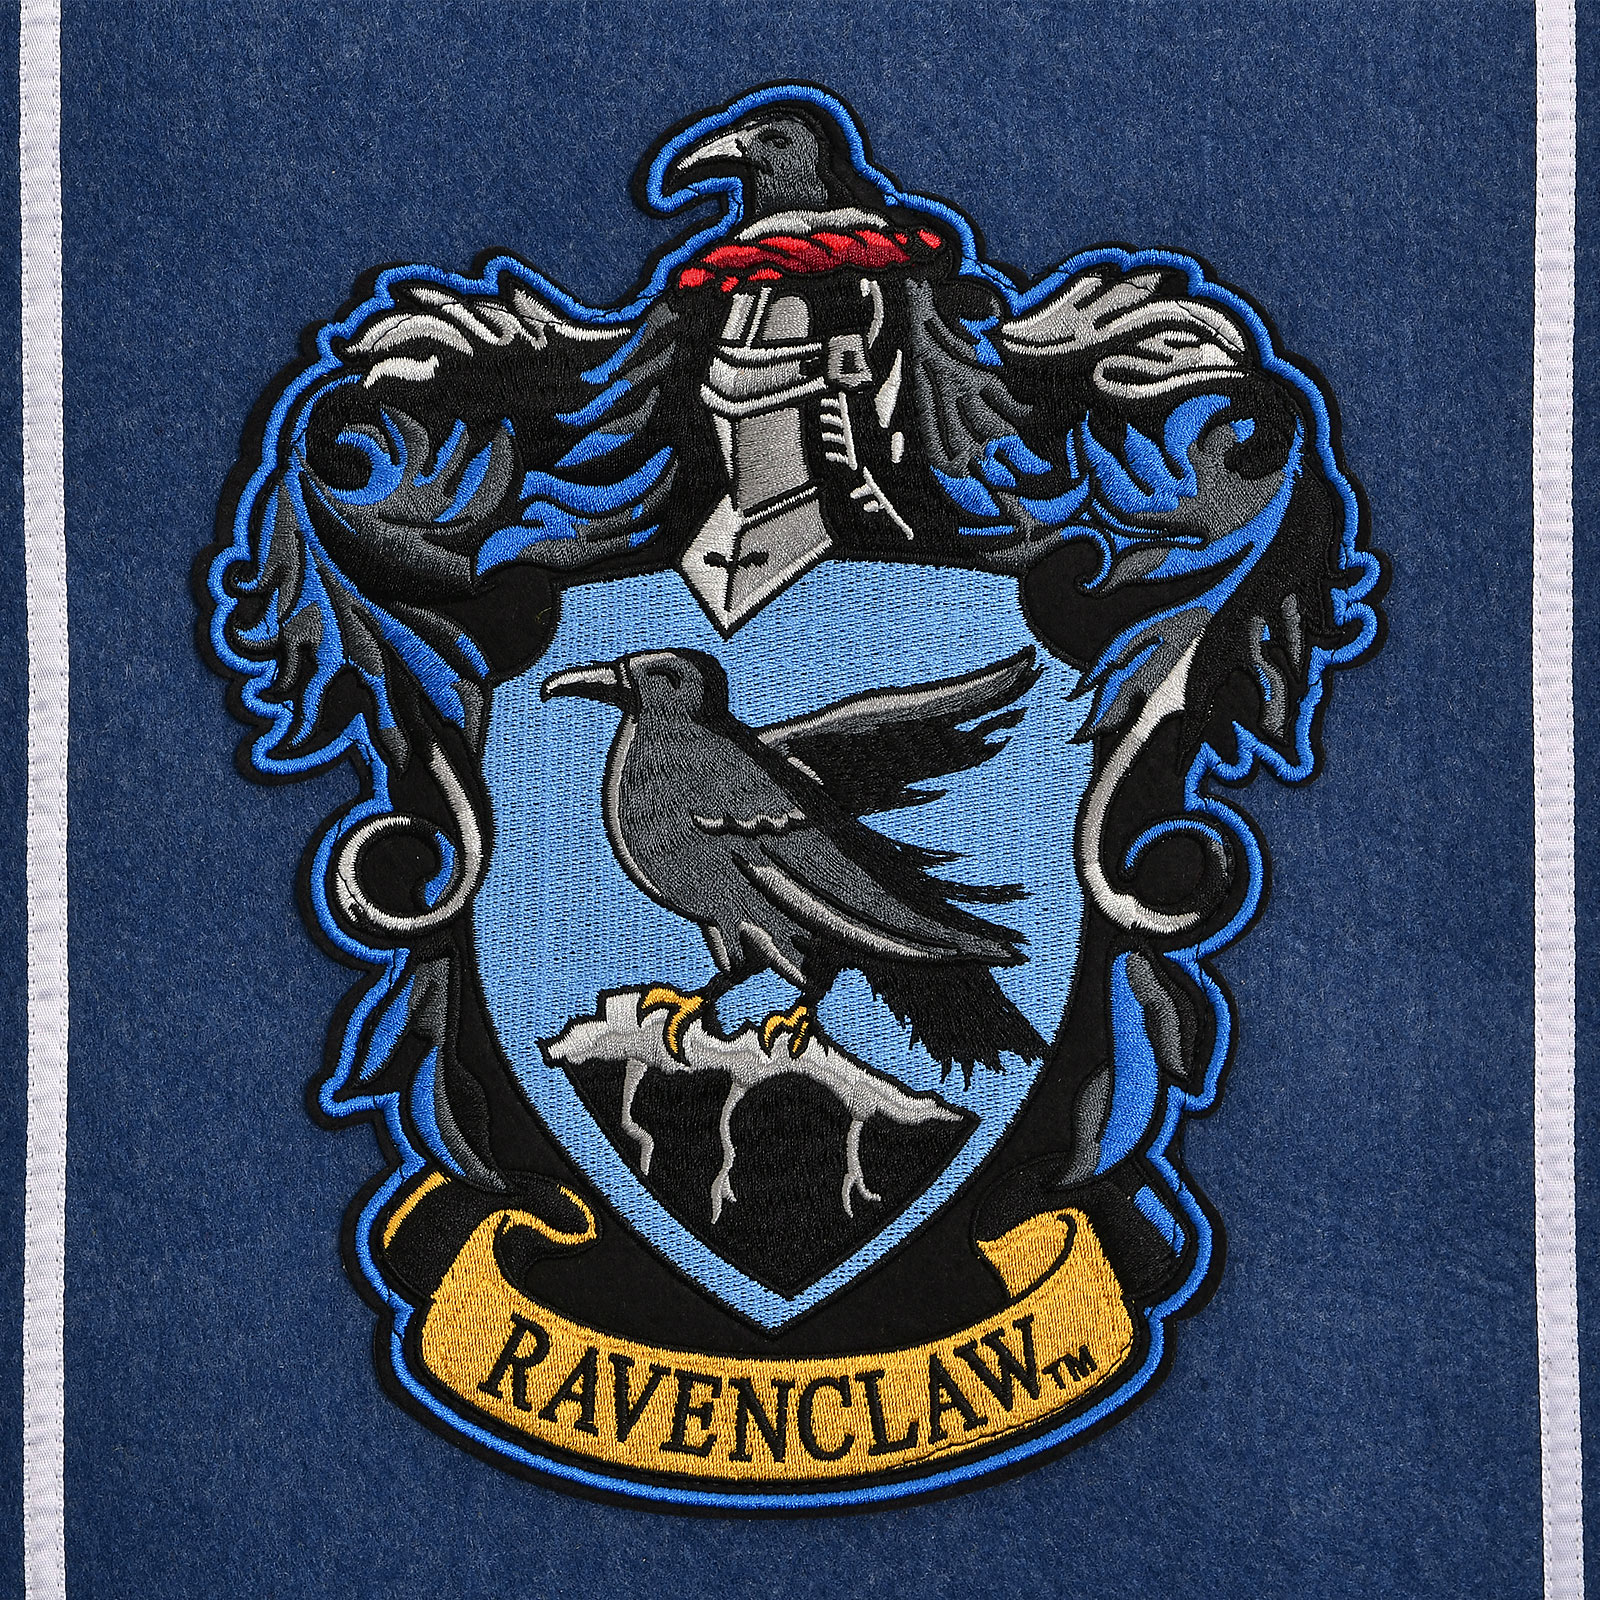 Harry Potter - Ravenclaw Crest Banner Felt